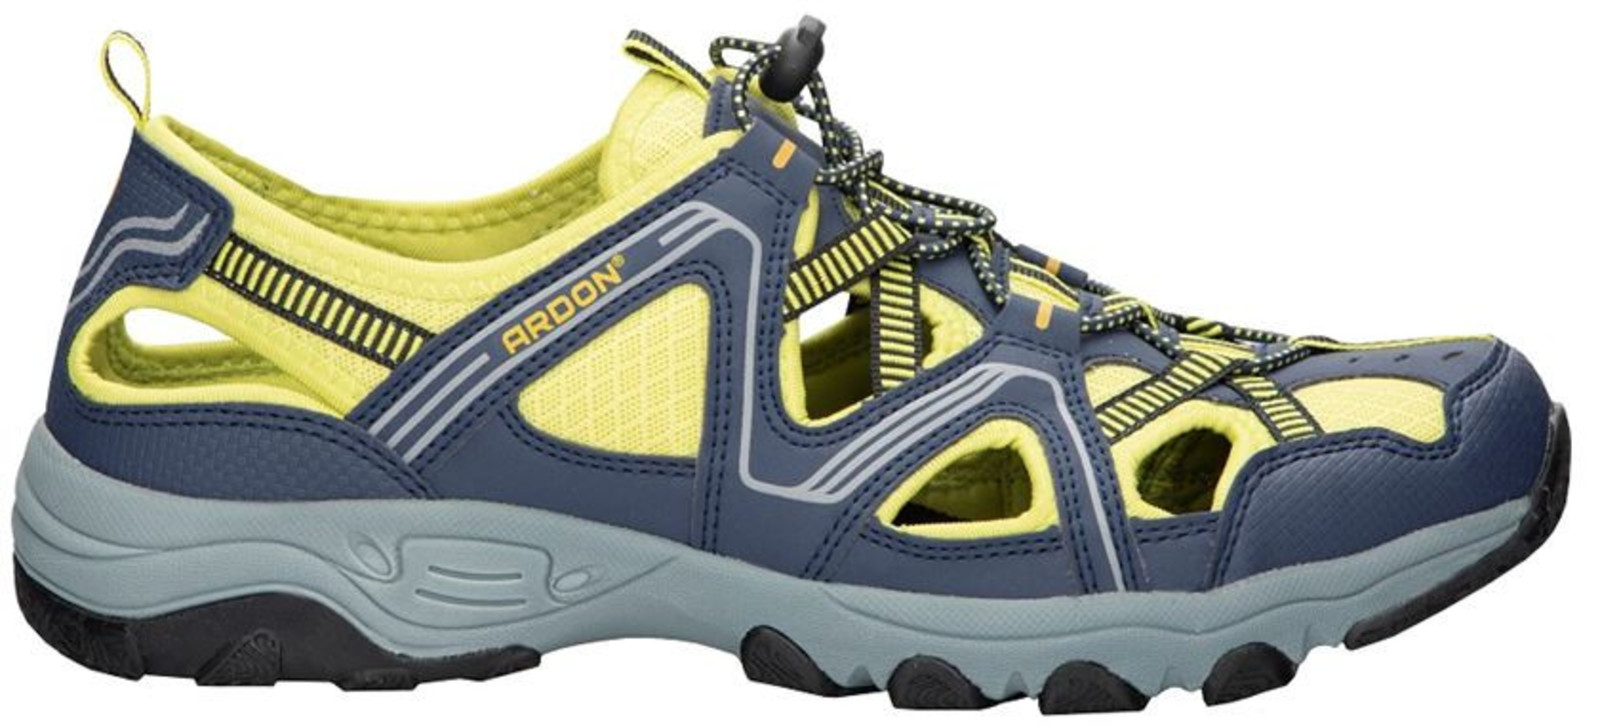 Trekové sandále Ardon Strand - veľkosť: 36, farba: modrá/žltá